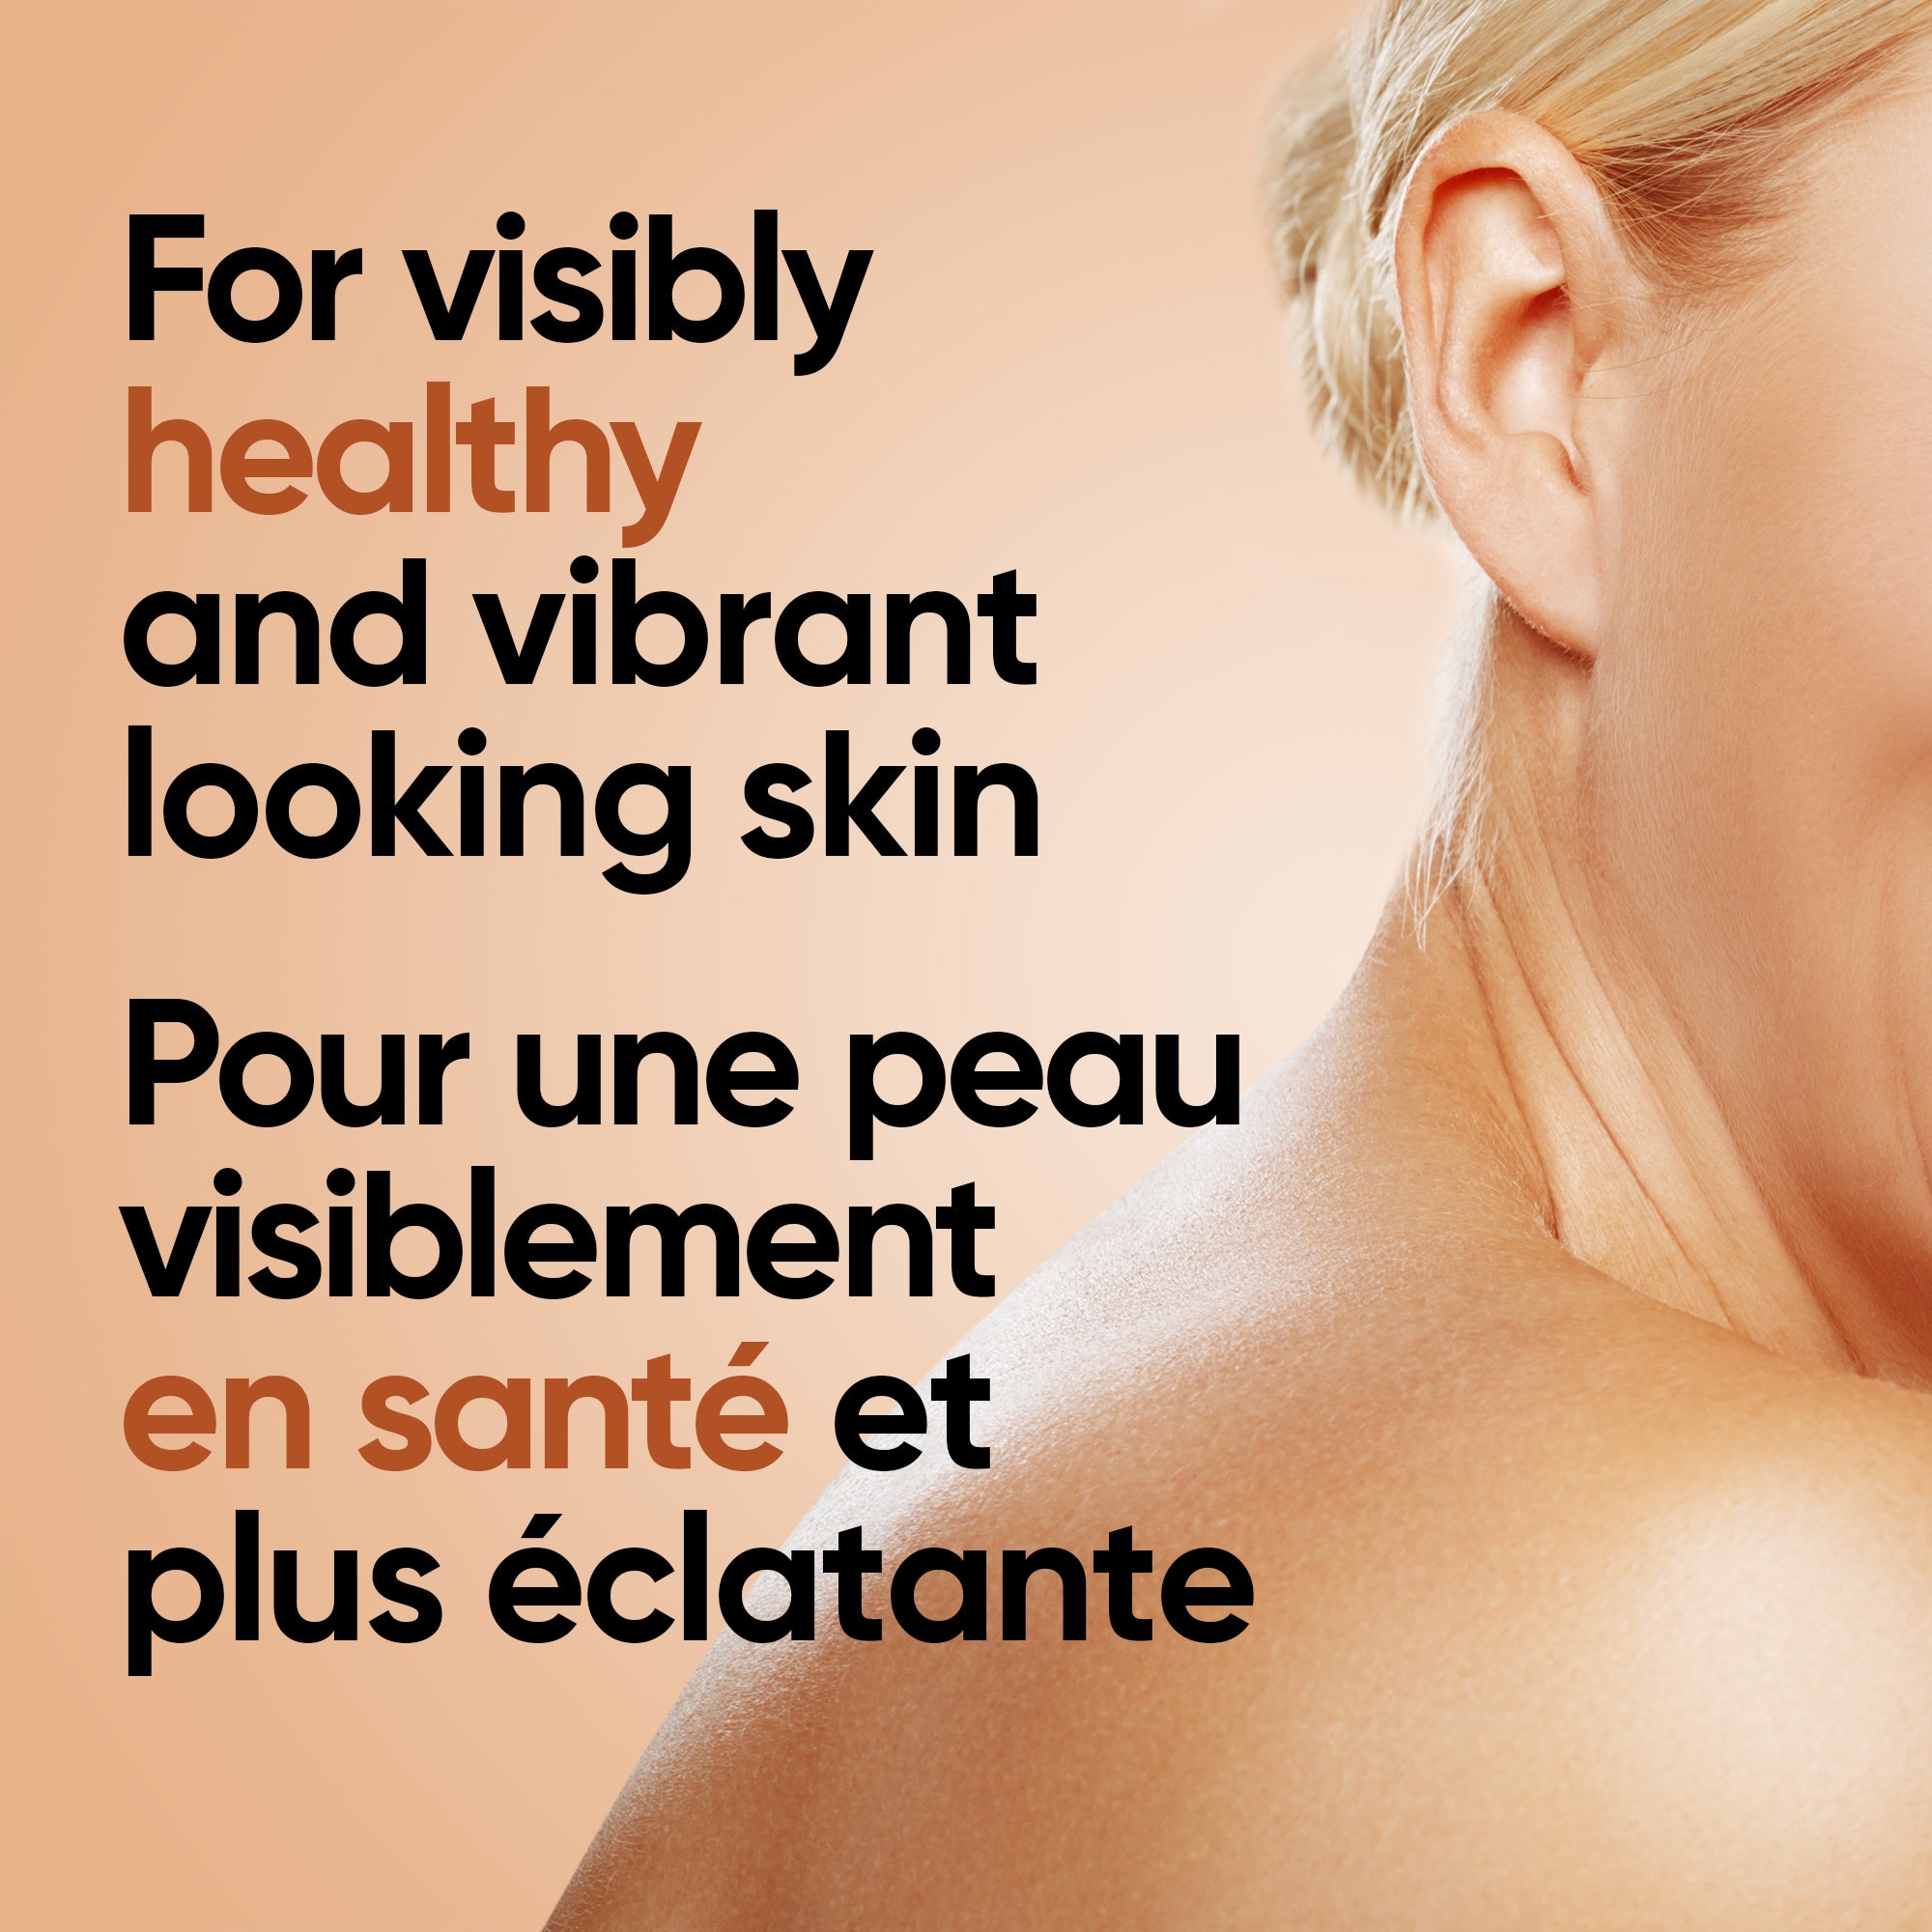 English: For visibly healthy and vibrant looking skin Français: Pour une peau visiblement saine et plus radieuse